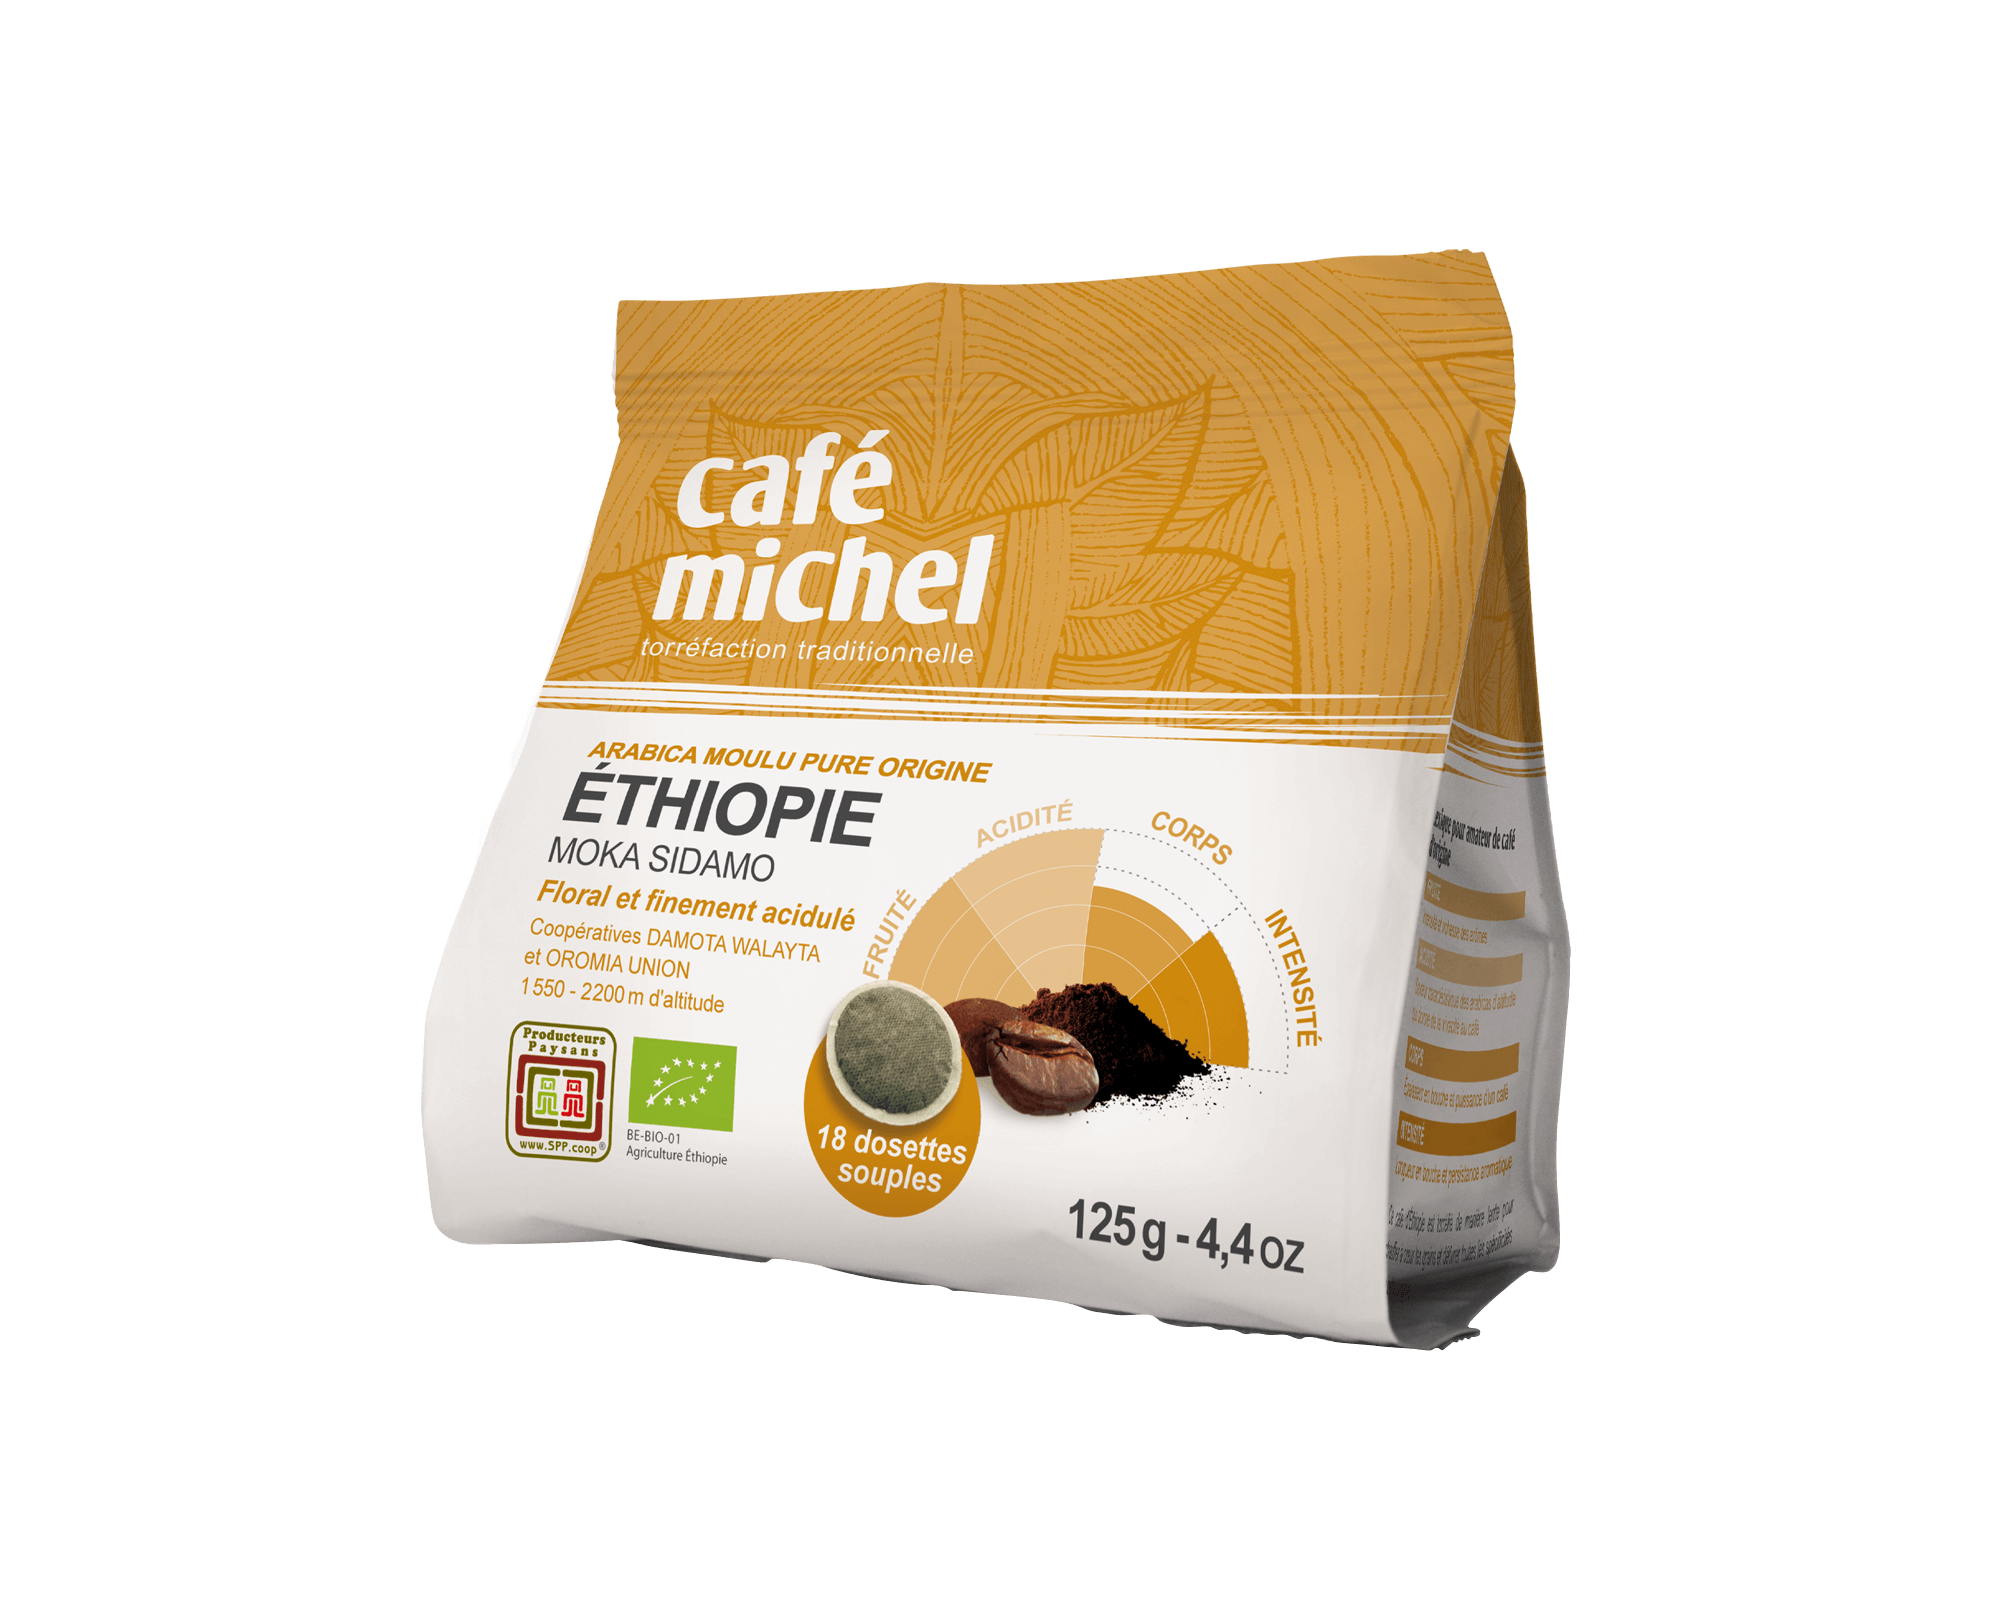 Dosettes souples d'arabica d'Éthiopie biologique et équitable - Café Michel